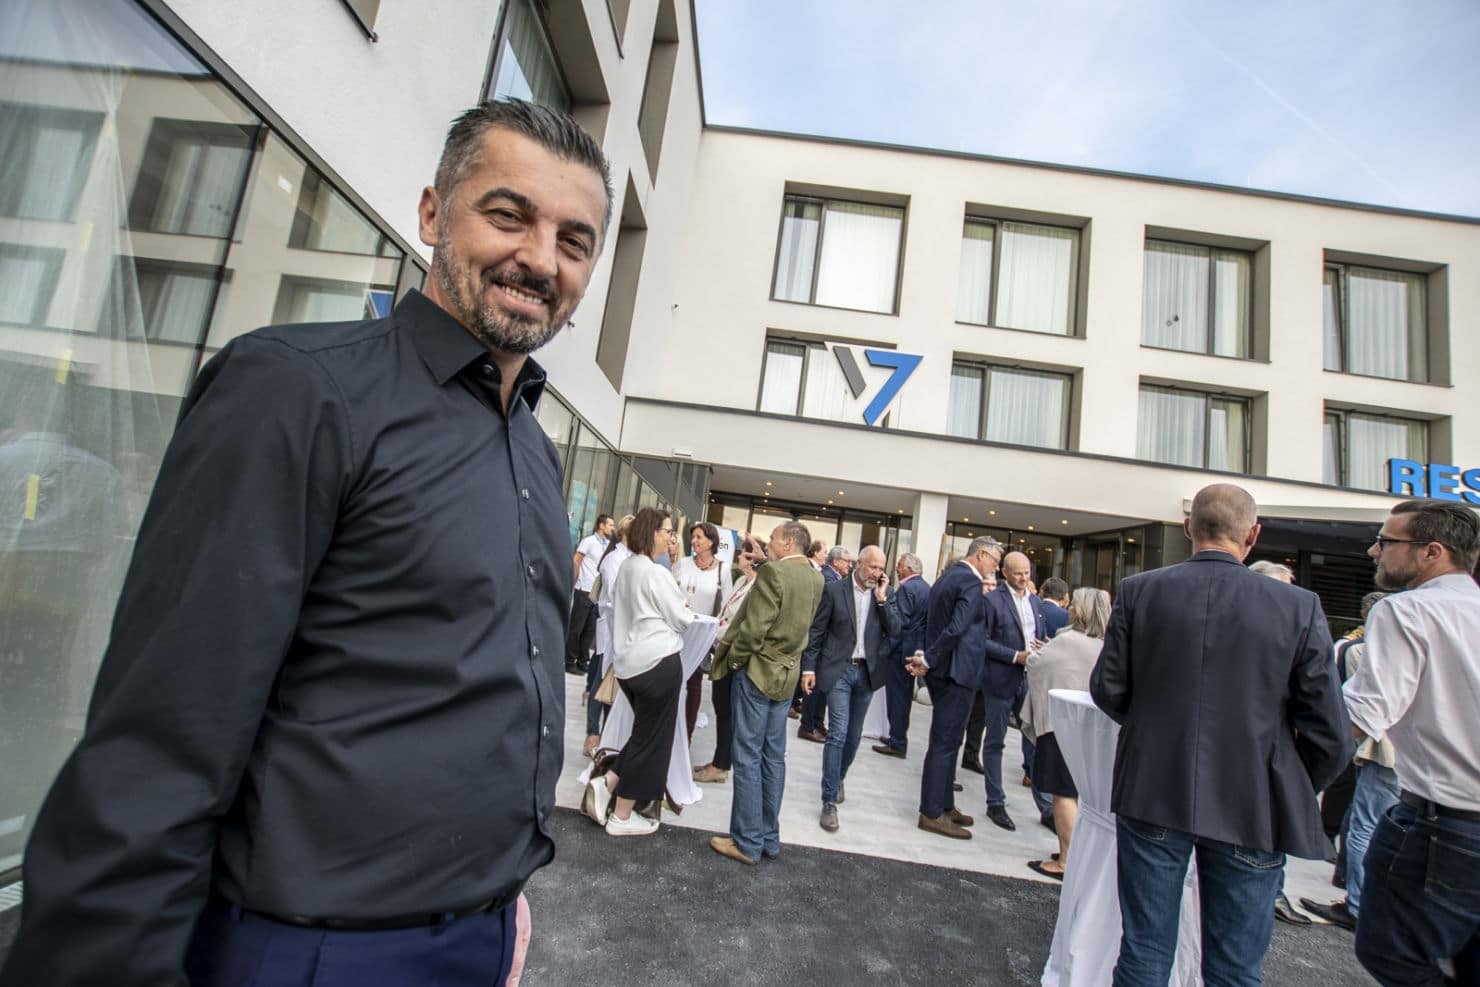 Der bekannte Villacher Unternehmer Miki Aleksic, erklärt gegenüber 5 Minuten, dass 20 bis 30 Arbeitsplätze entstehen werden”. Er ist auch Chef des Hotel “Seven” sowie “Mikis Knusperhendl”.